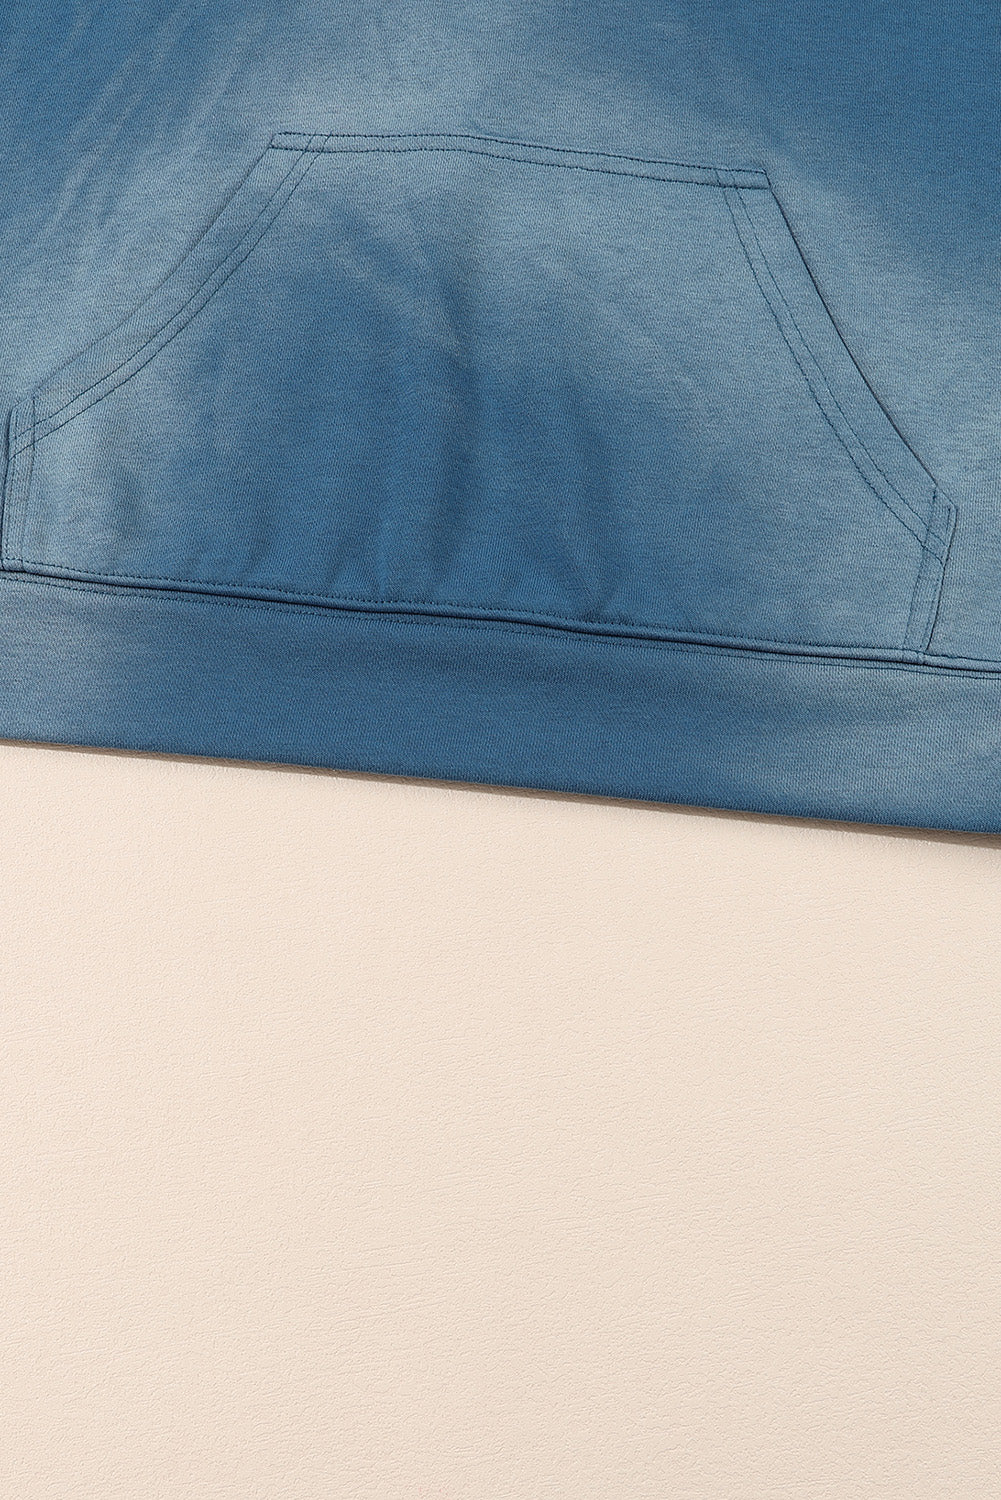 Plava jednobojna majica s kapuljačom s kapuljačom u obliku klokana